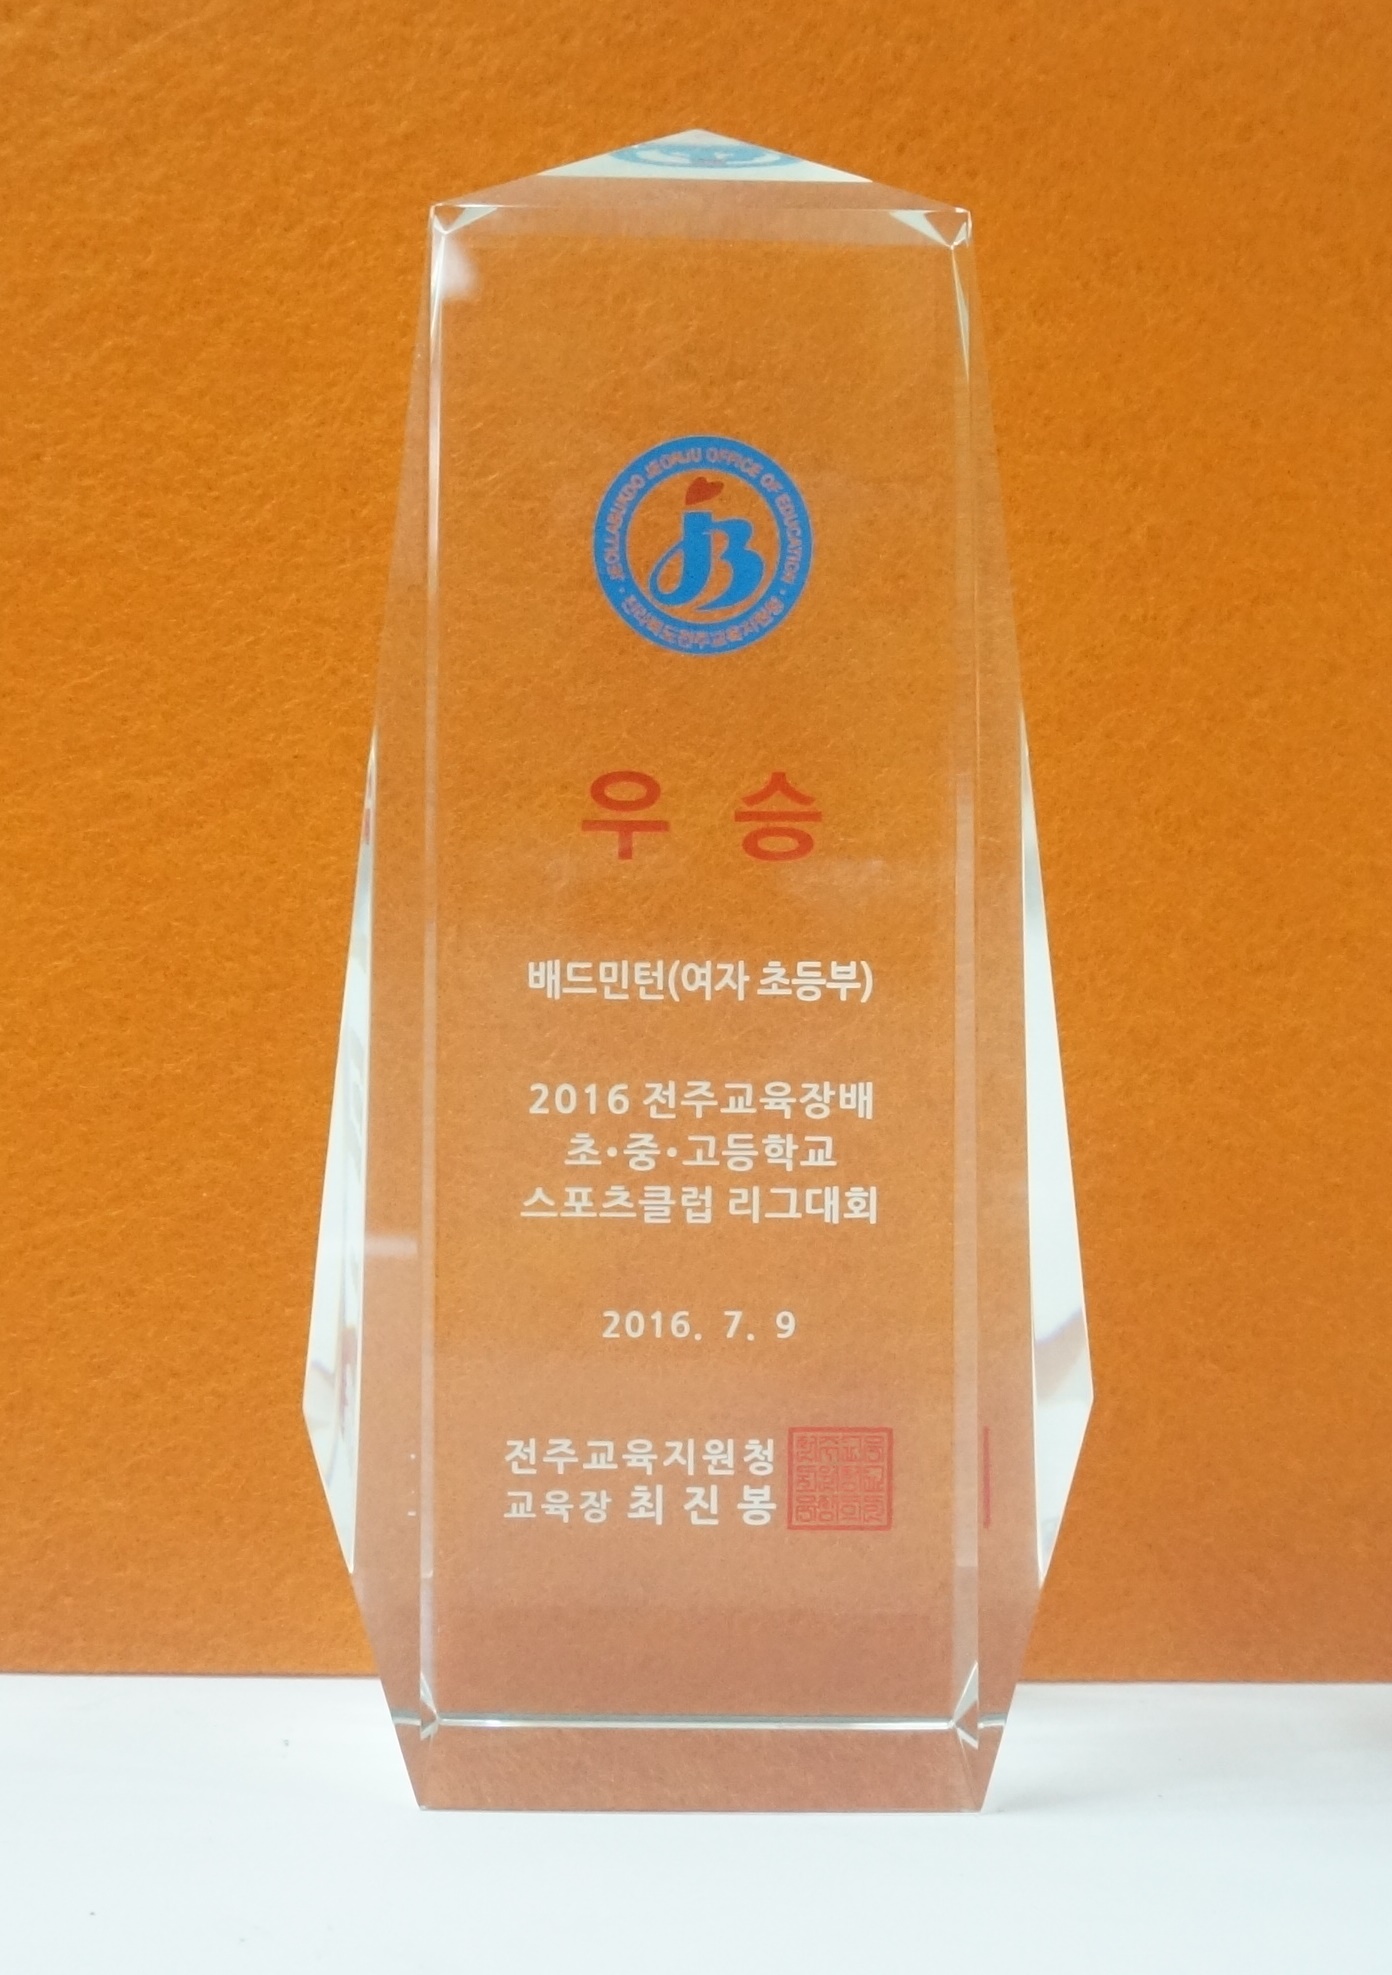 2016-전주교육장배스포츠클럽리그대회(우승-배드민턴(여))